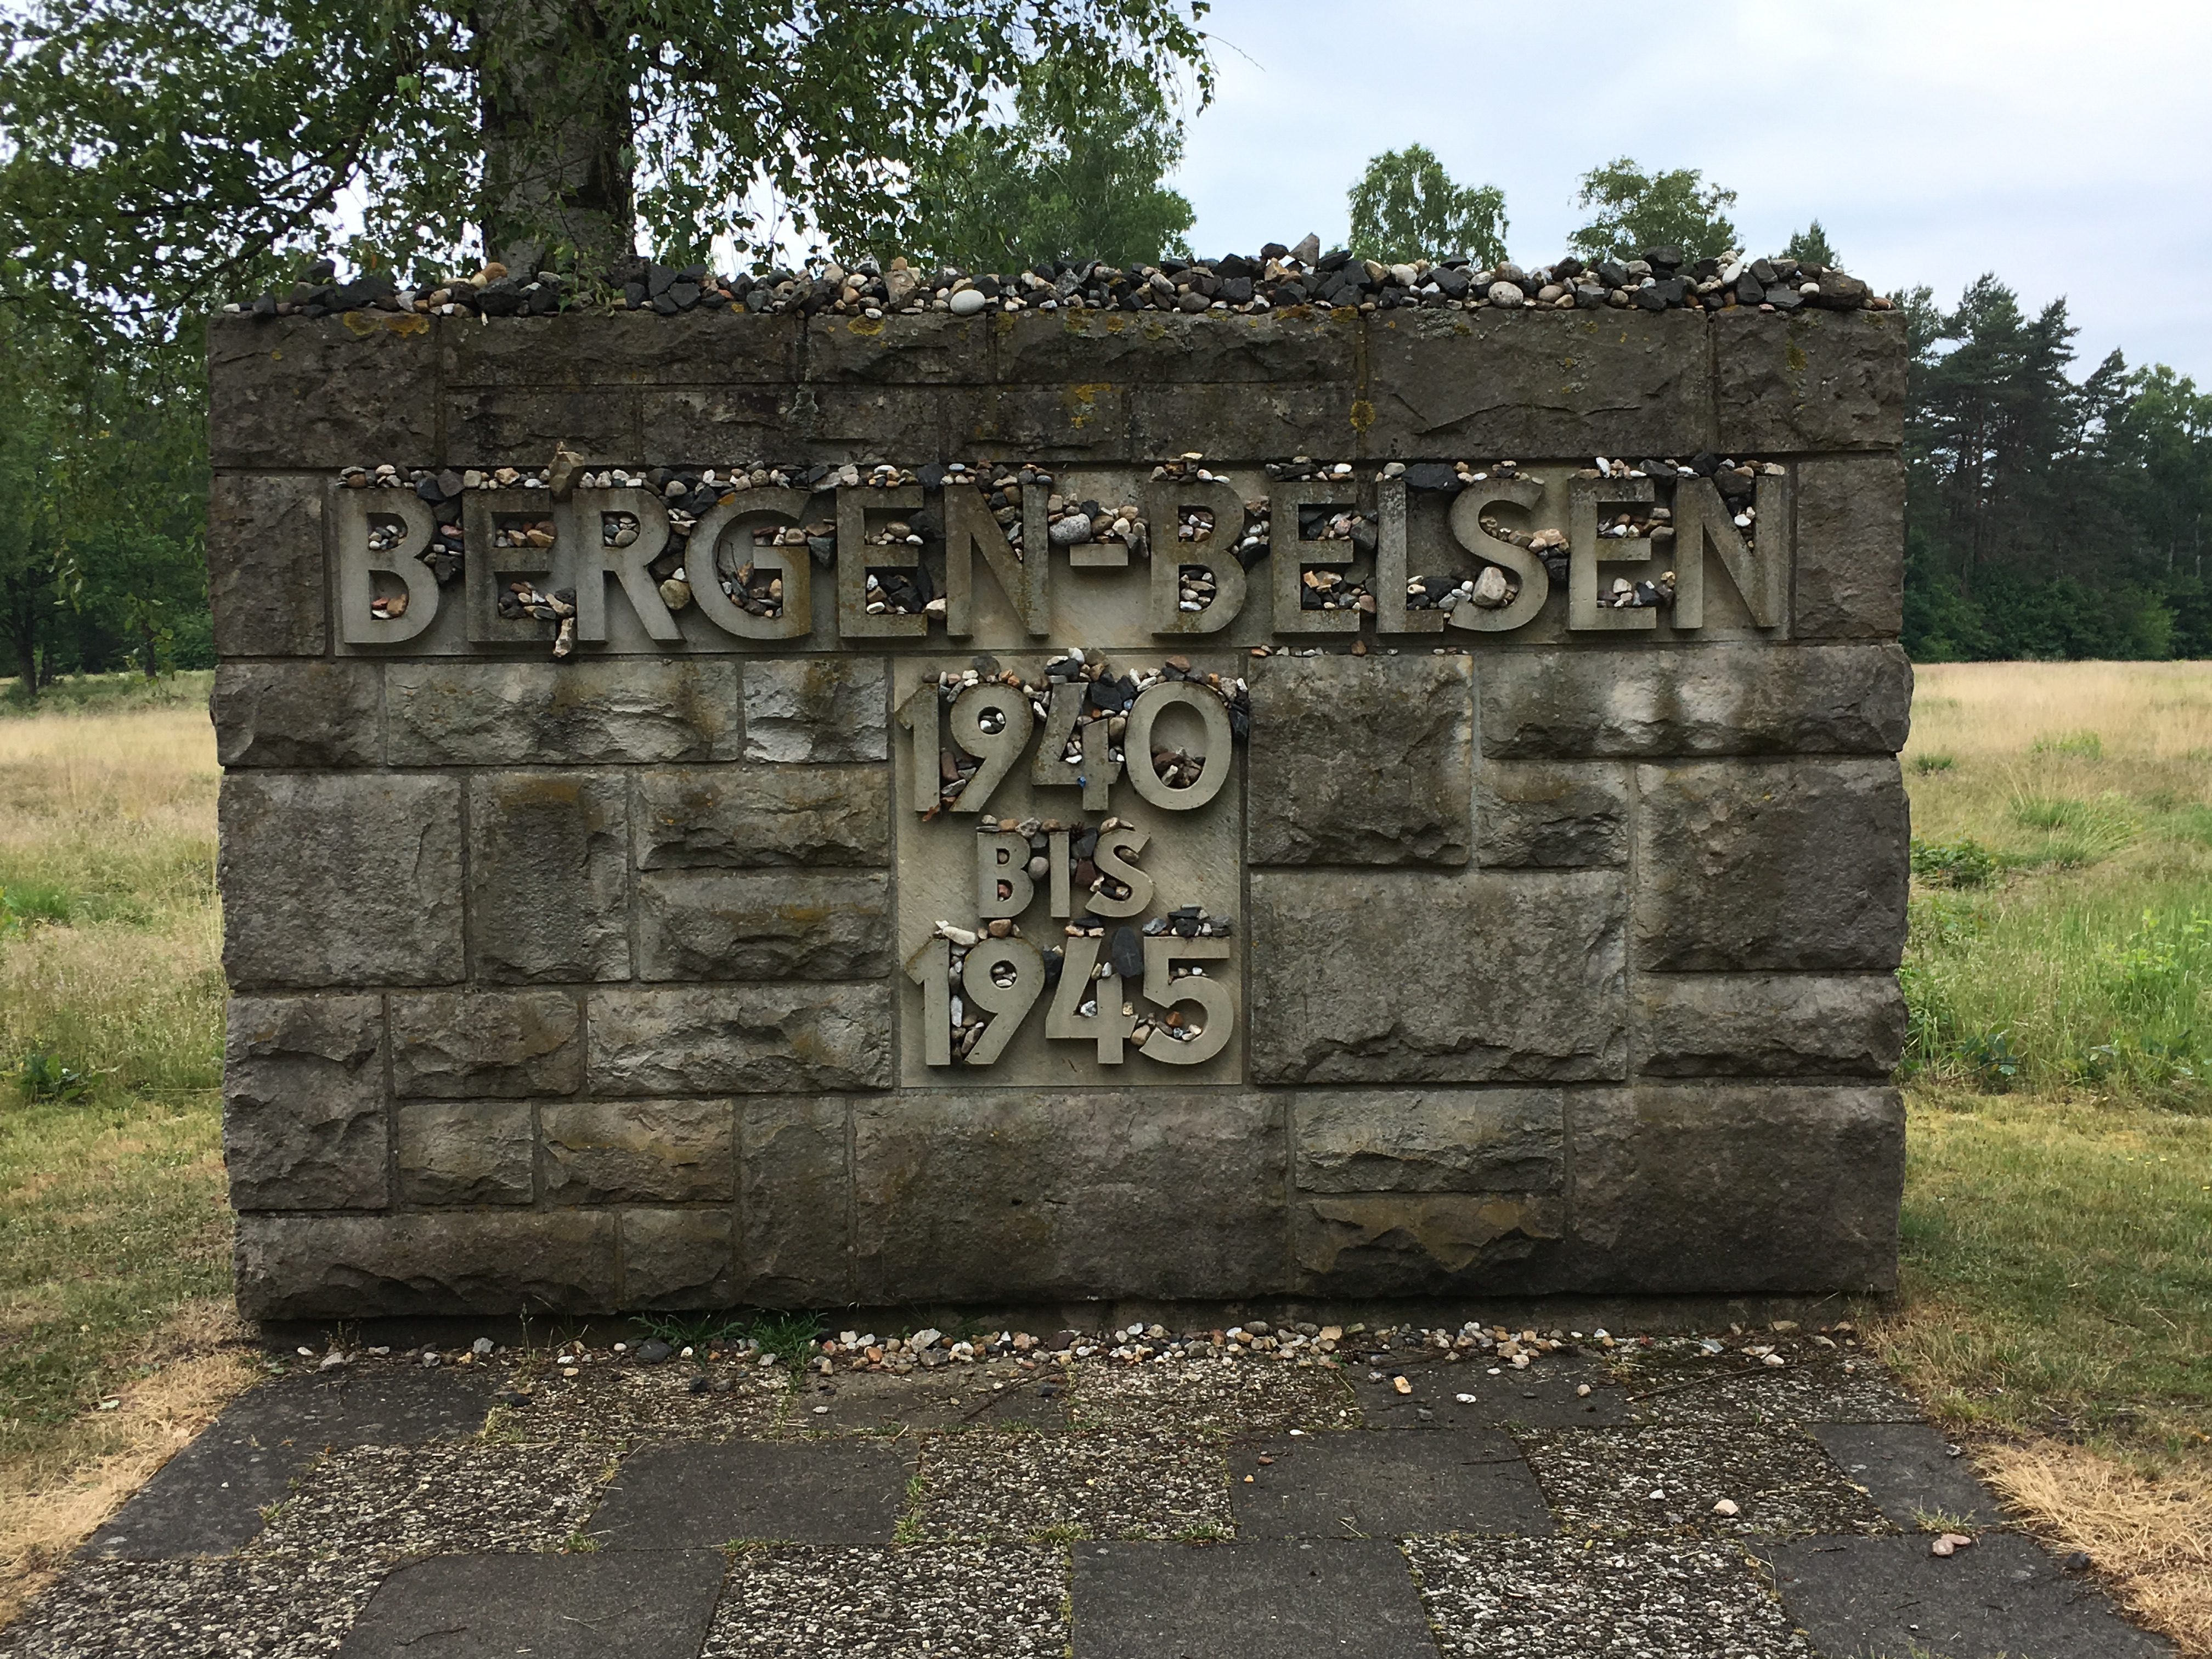 Bergen-Belsen Concentration Camp